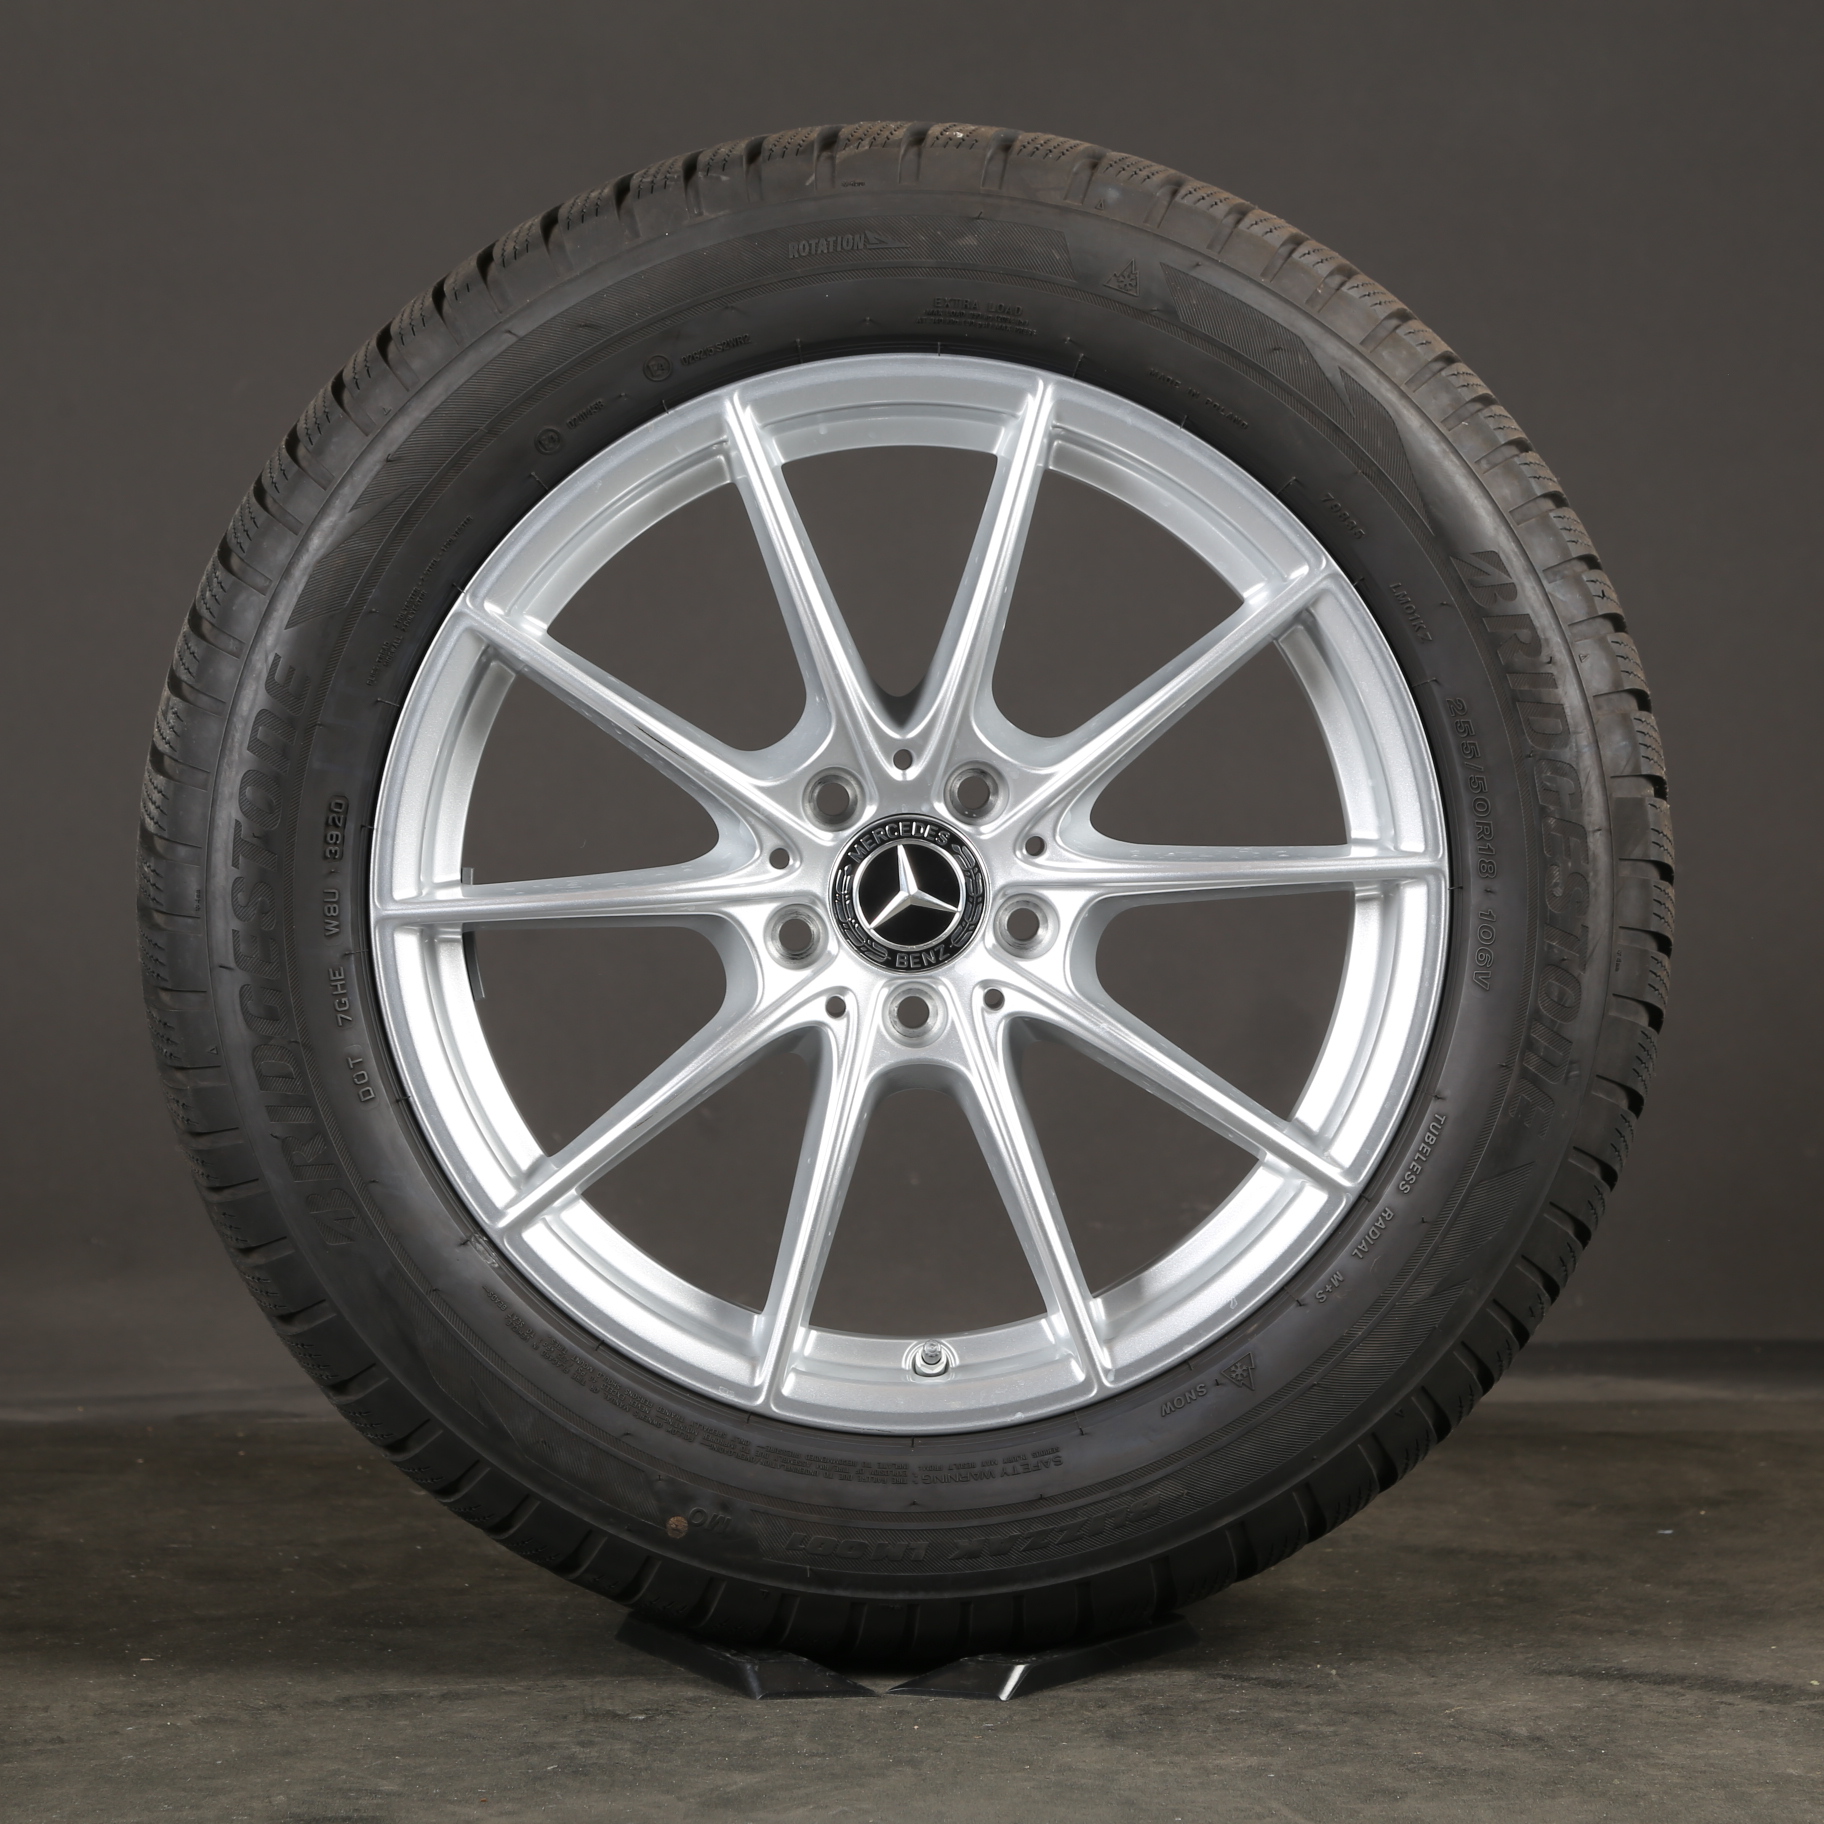 Llantas de invierno de 18 pulgadas originales Mercedes Clase S W223 A2234012800 neumáticos de invierno